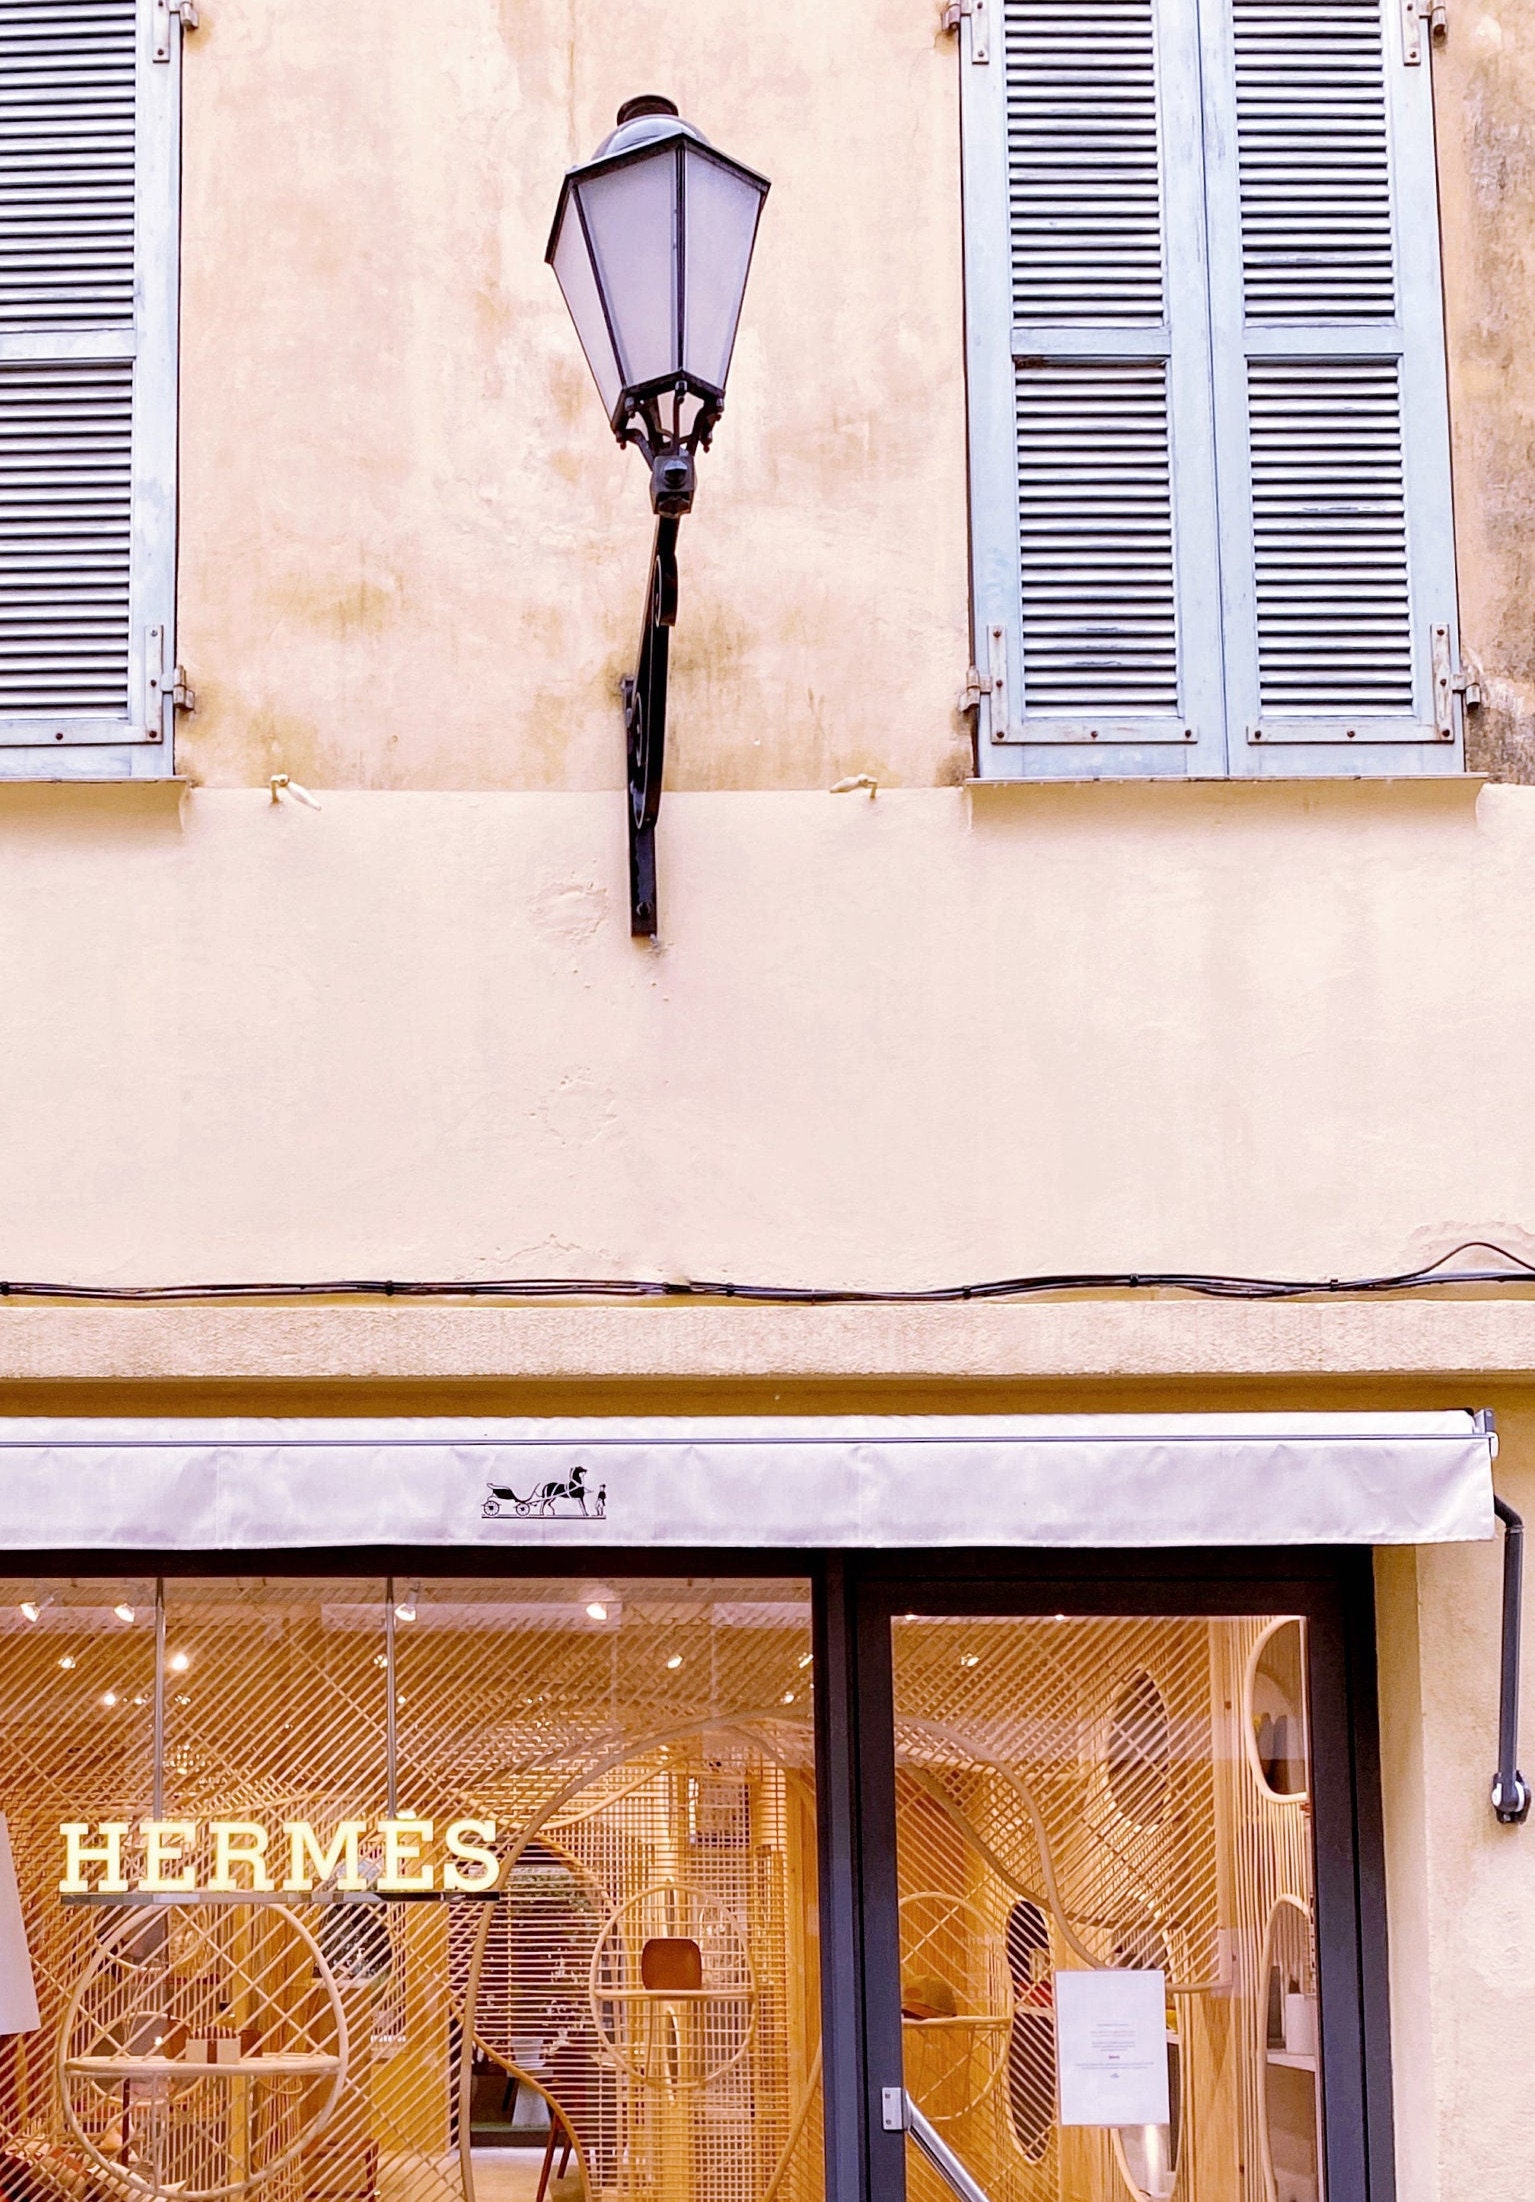 Hermes Store Saint Tropez  St. tropez, Luxury villa, Hermes store